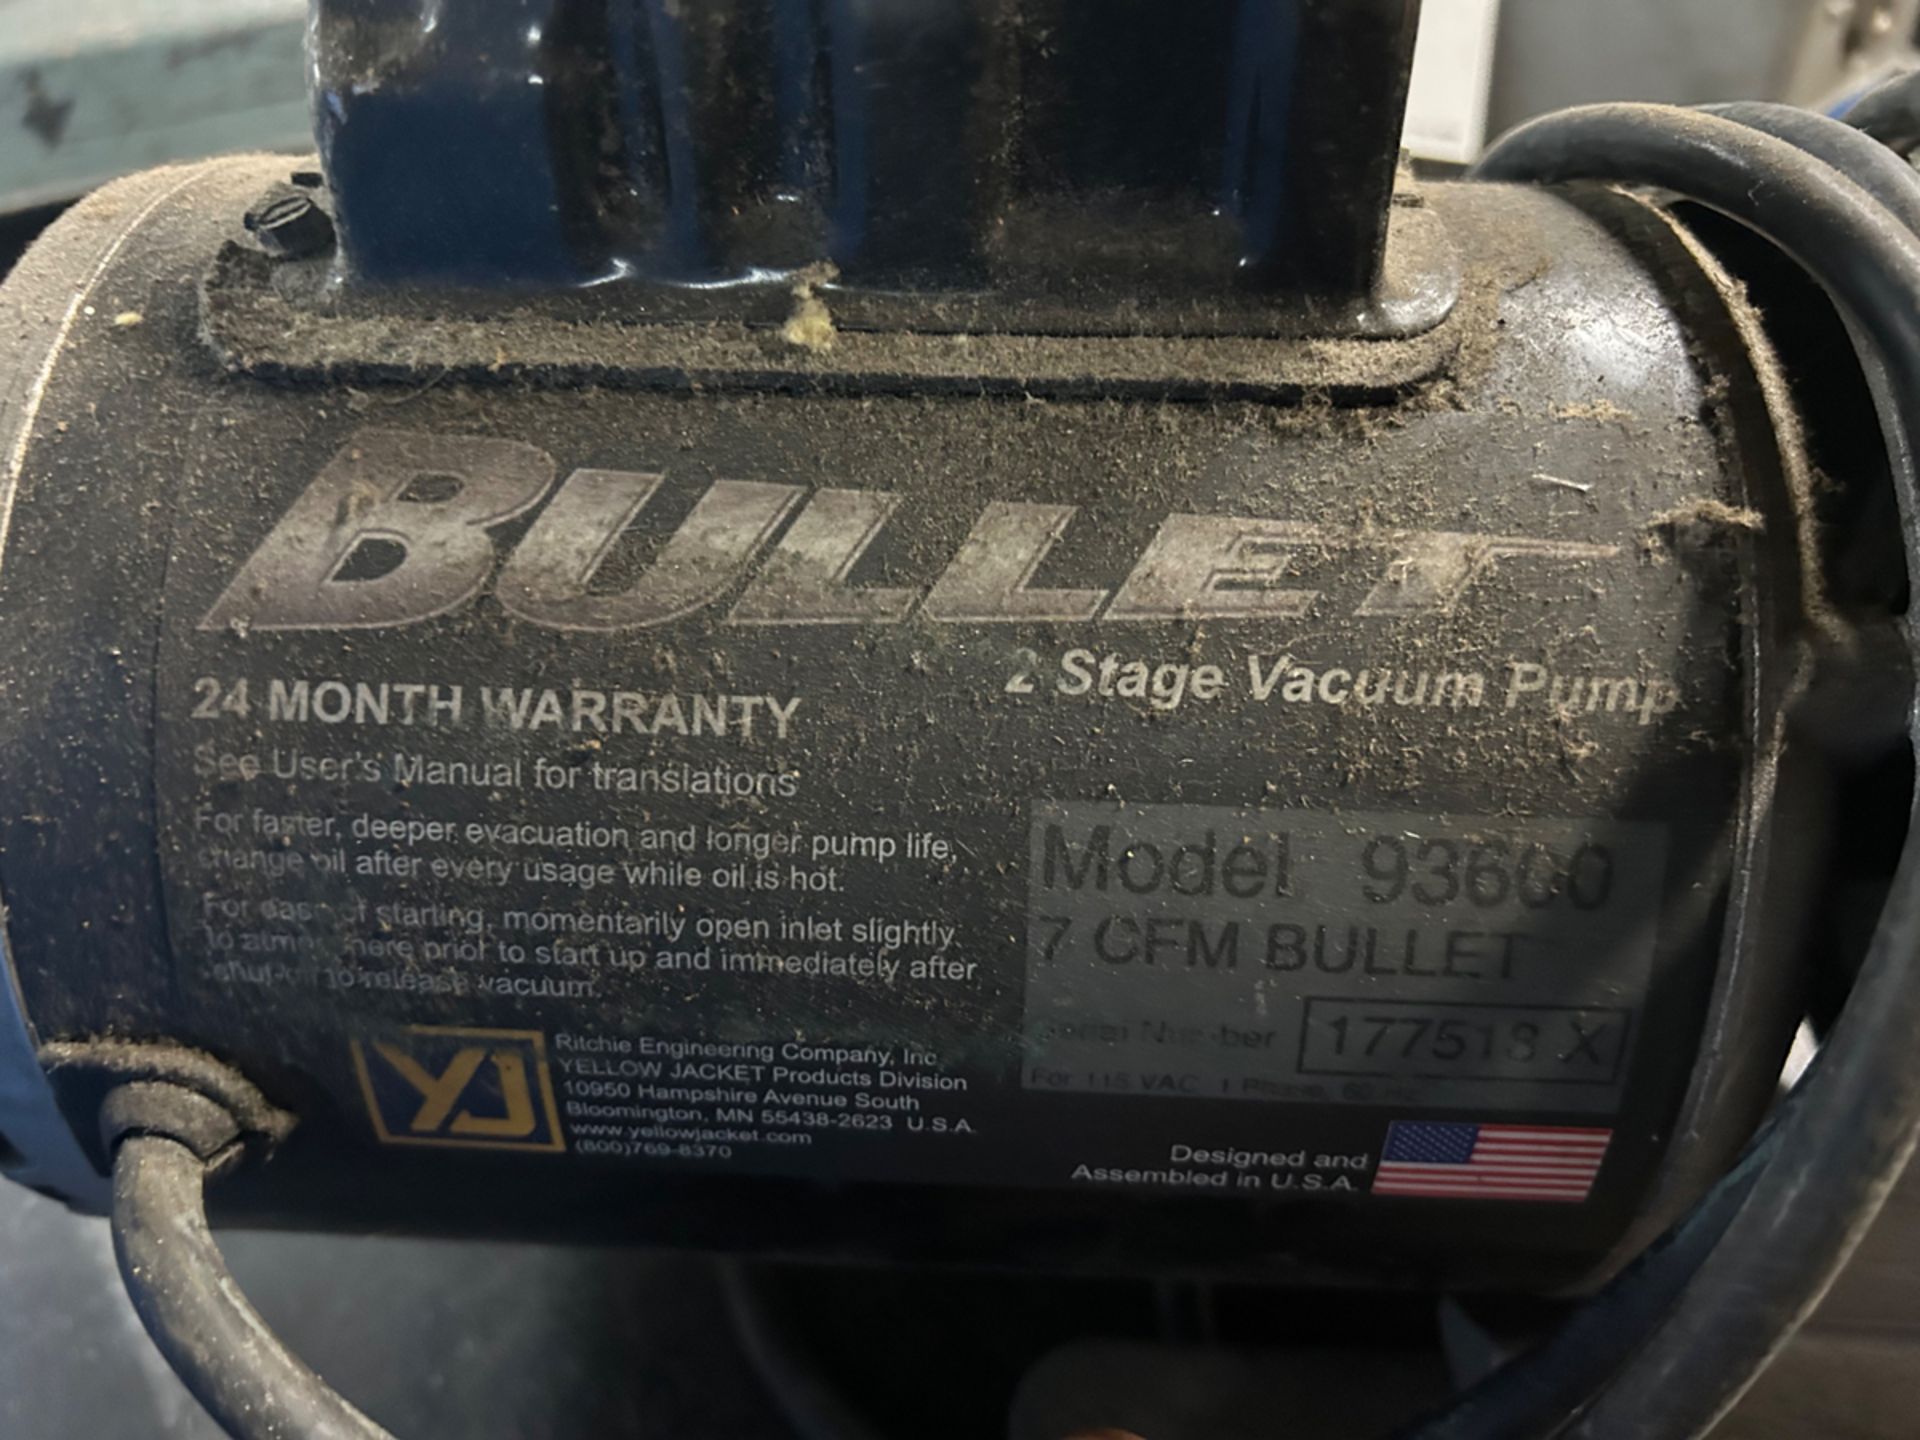 Bullet Model 93600 2 Stage Vacuum Pump - Image 3 of 3